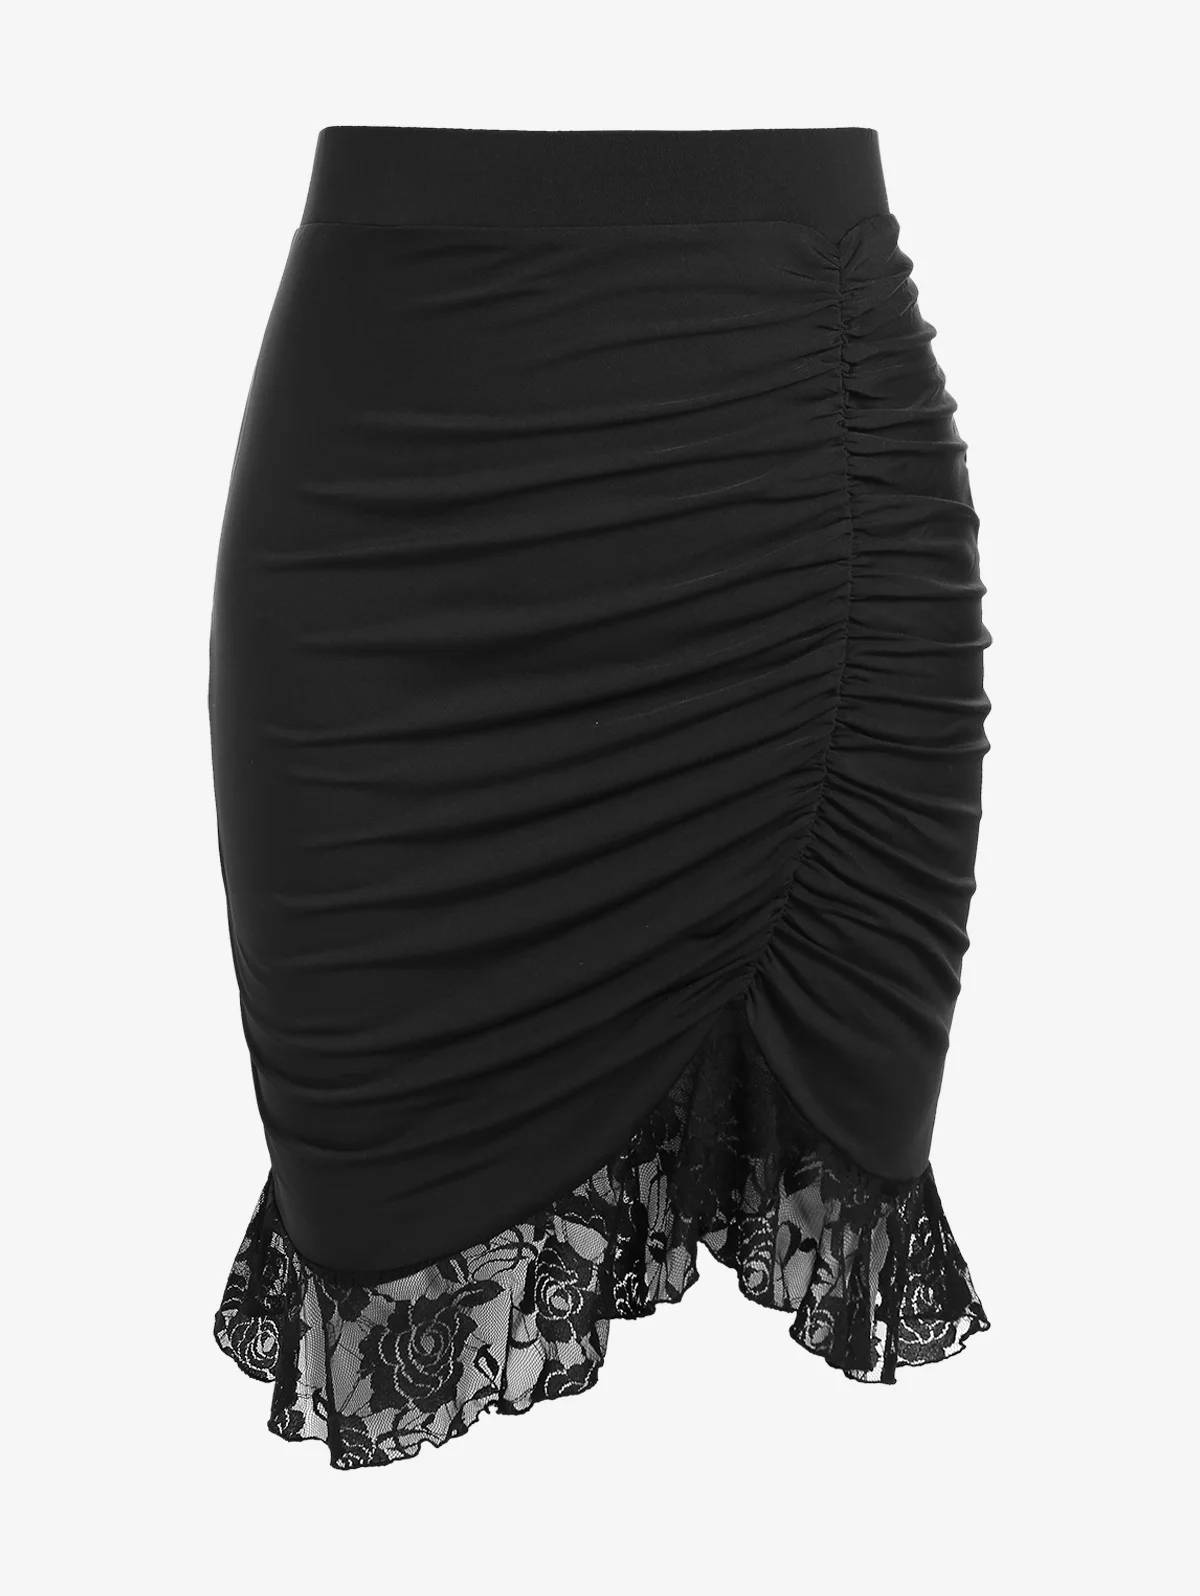 ROSEGAL שחור אלגנטי Ruched תחרה מכפלת החצאית בתוספת גודל של נשים לחיים Bodycon באורך הברך חצאיות התמונה 0